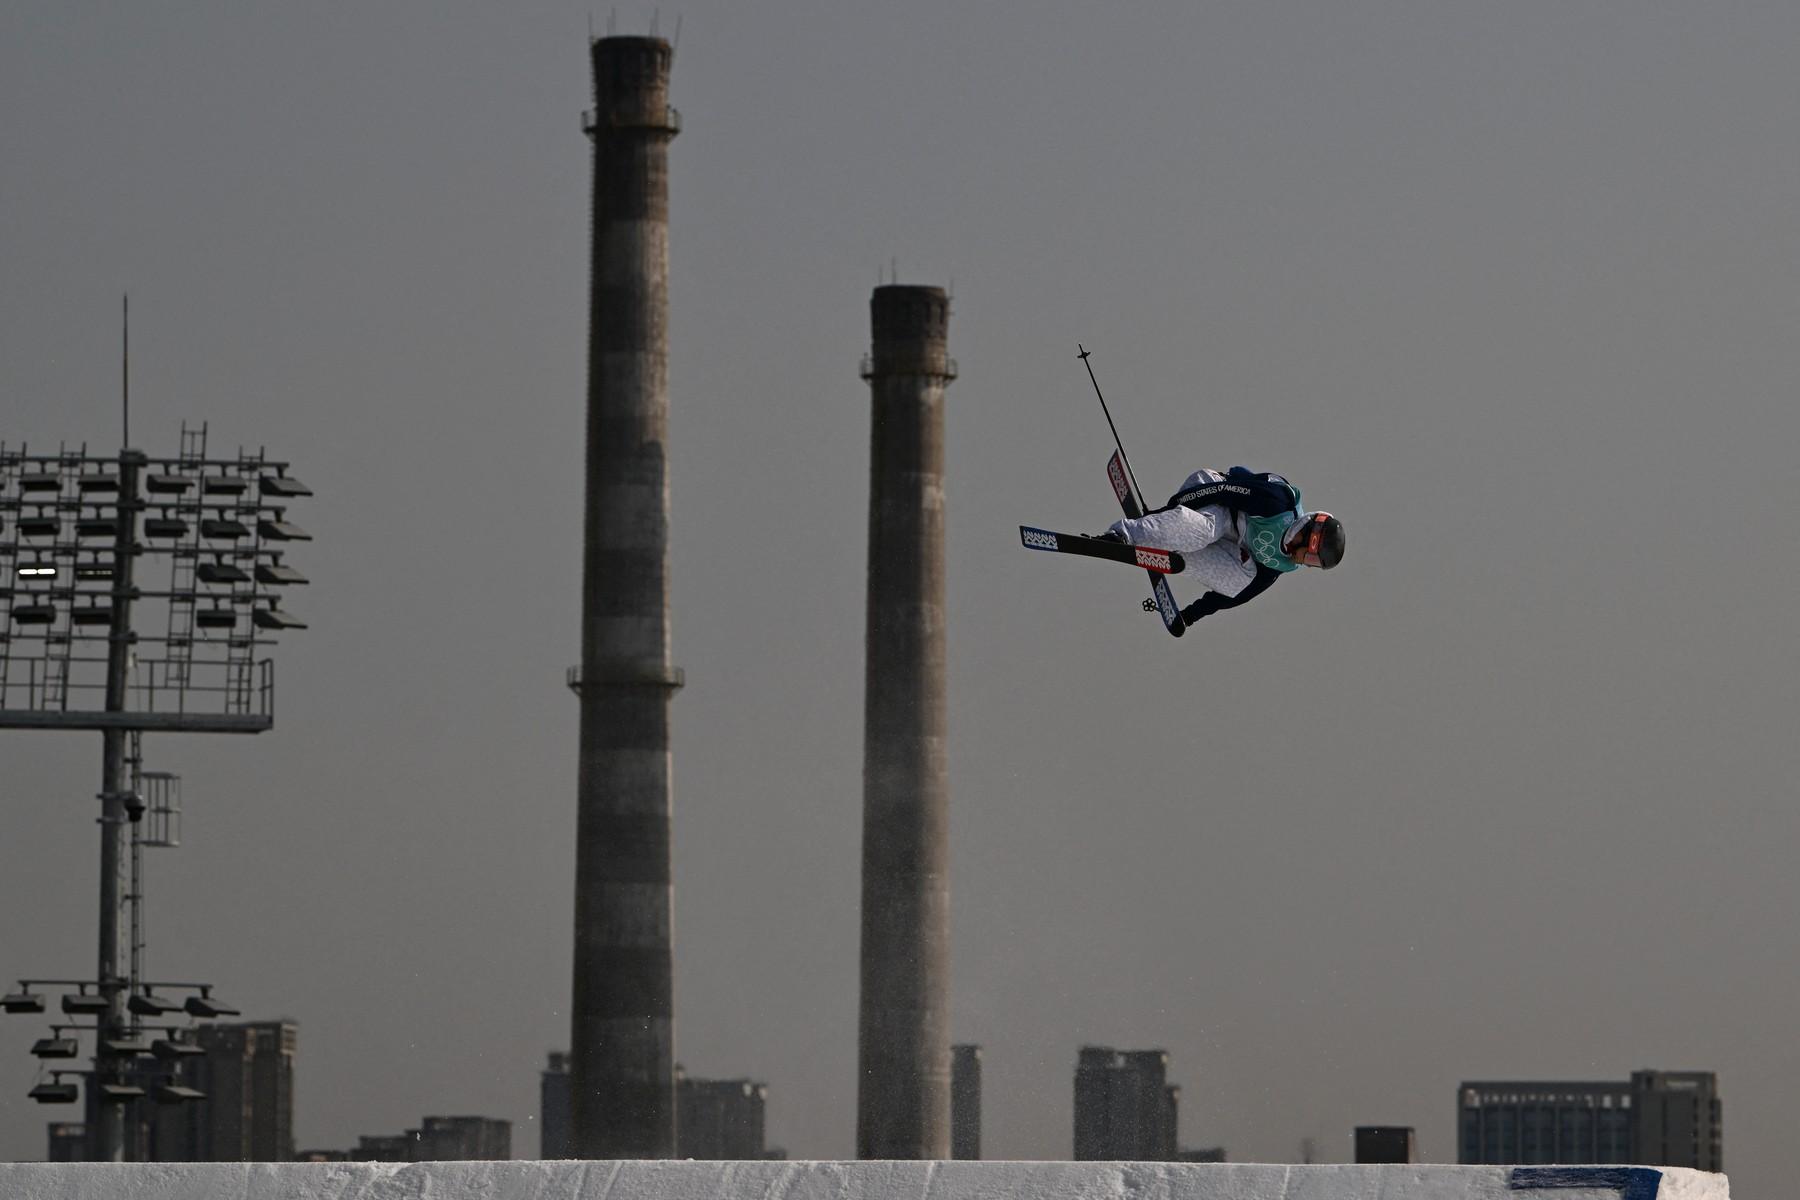 Peisaj apocaliptic la JO de la Beijing. Schi acrobatic lângă turnuri de răcire, coșuri de fum și cuptoare industriale, scoase din uz